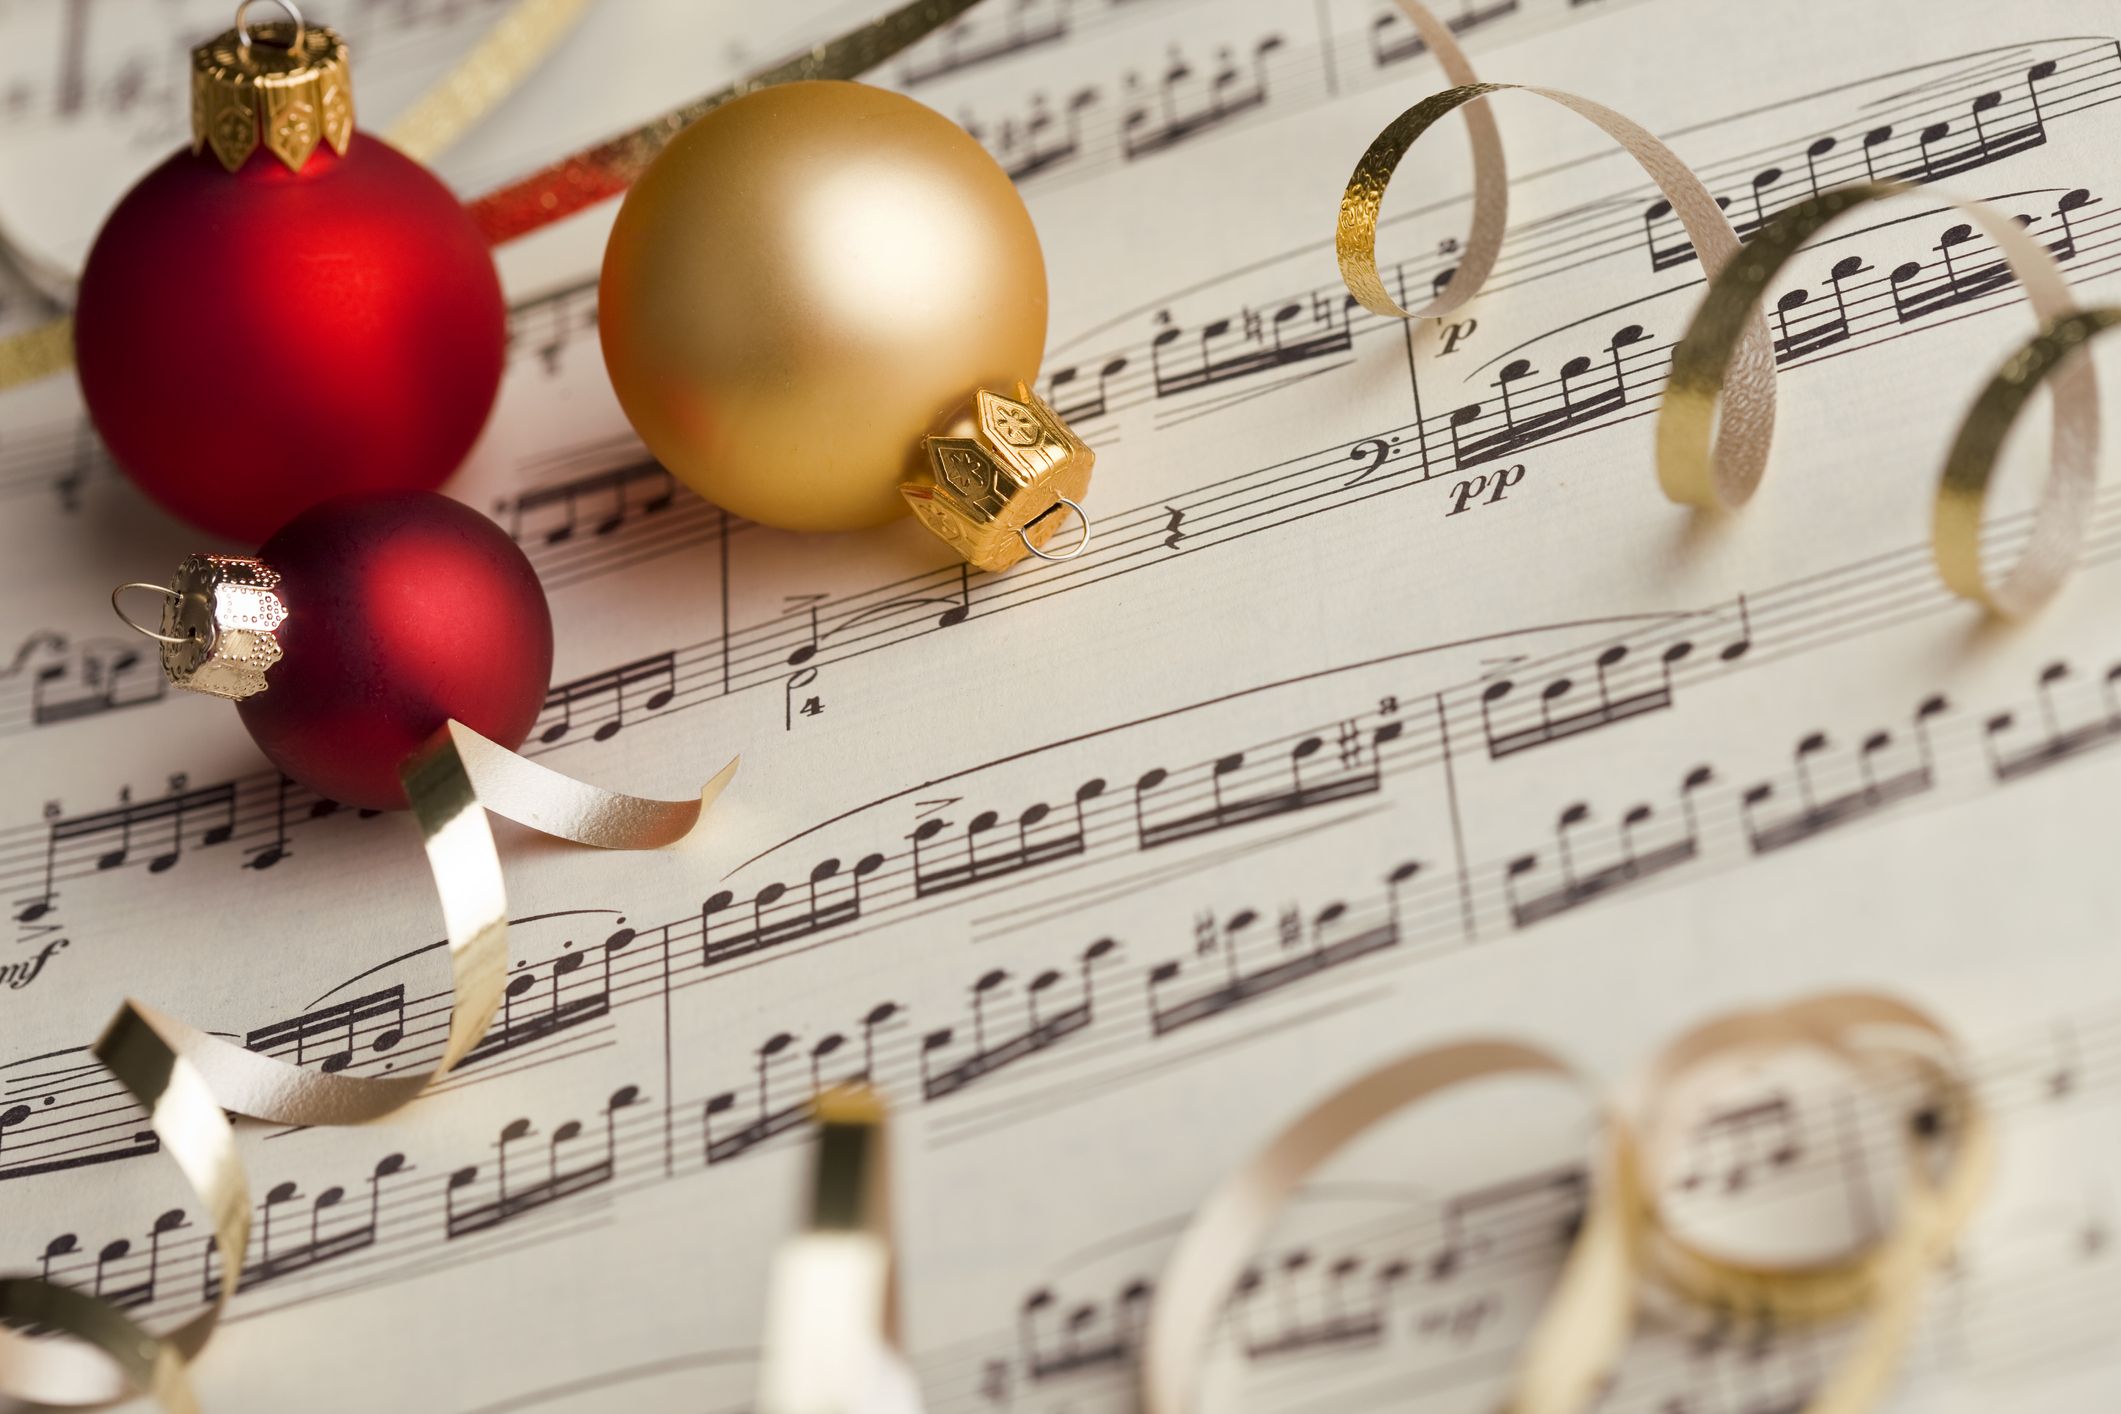 Trong không khí rộn ràng của mùa Giáng sinh, hãy cùng nhau nghe những bài hát cổ điển vẫn giữ được vị ngọt ngào suốt nhiều năm qua. Hãy xem danh sách những bài hát và cùng nhau thưởng thức không khí lễ hội đầy ấm áp và trìu mến này nhé!